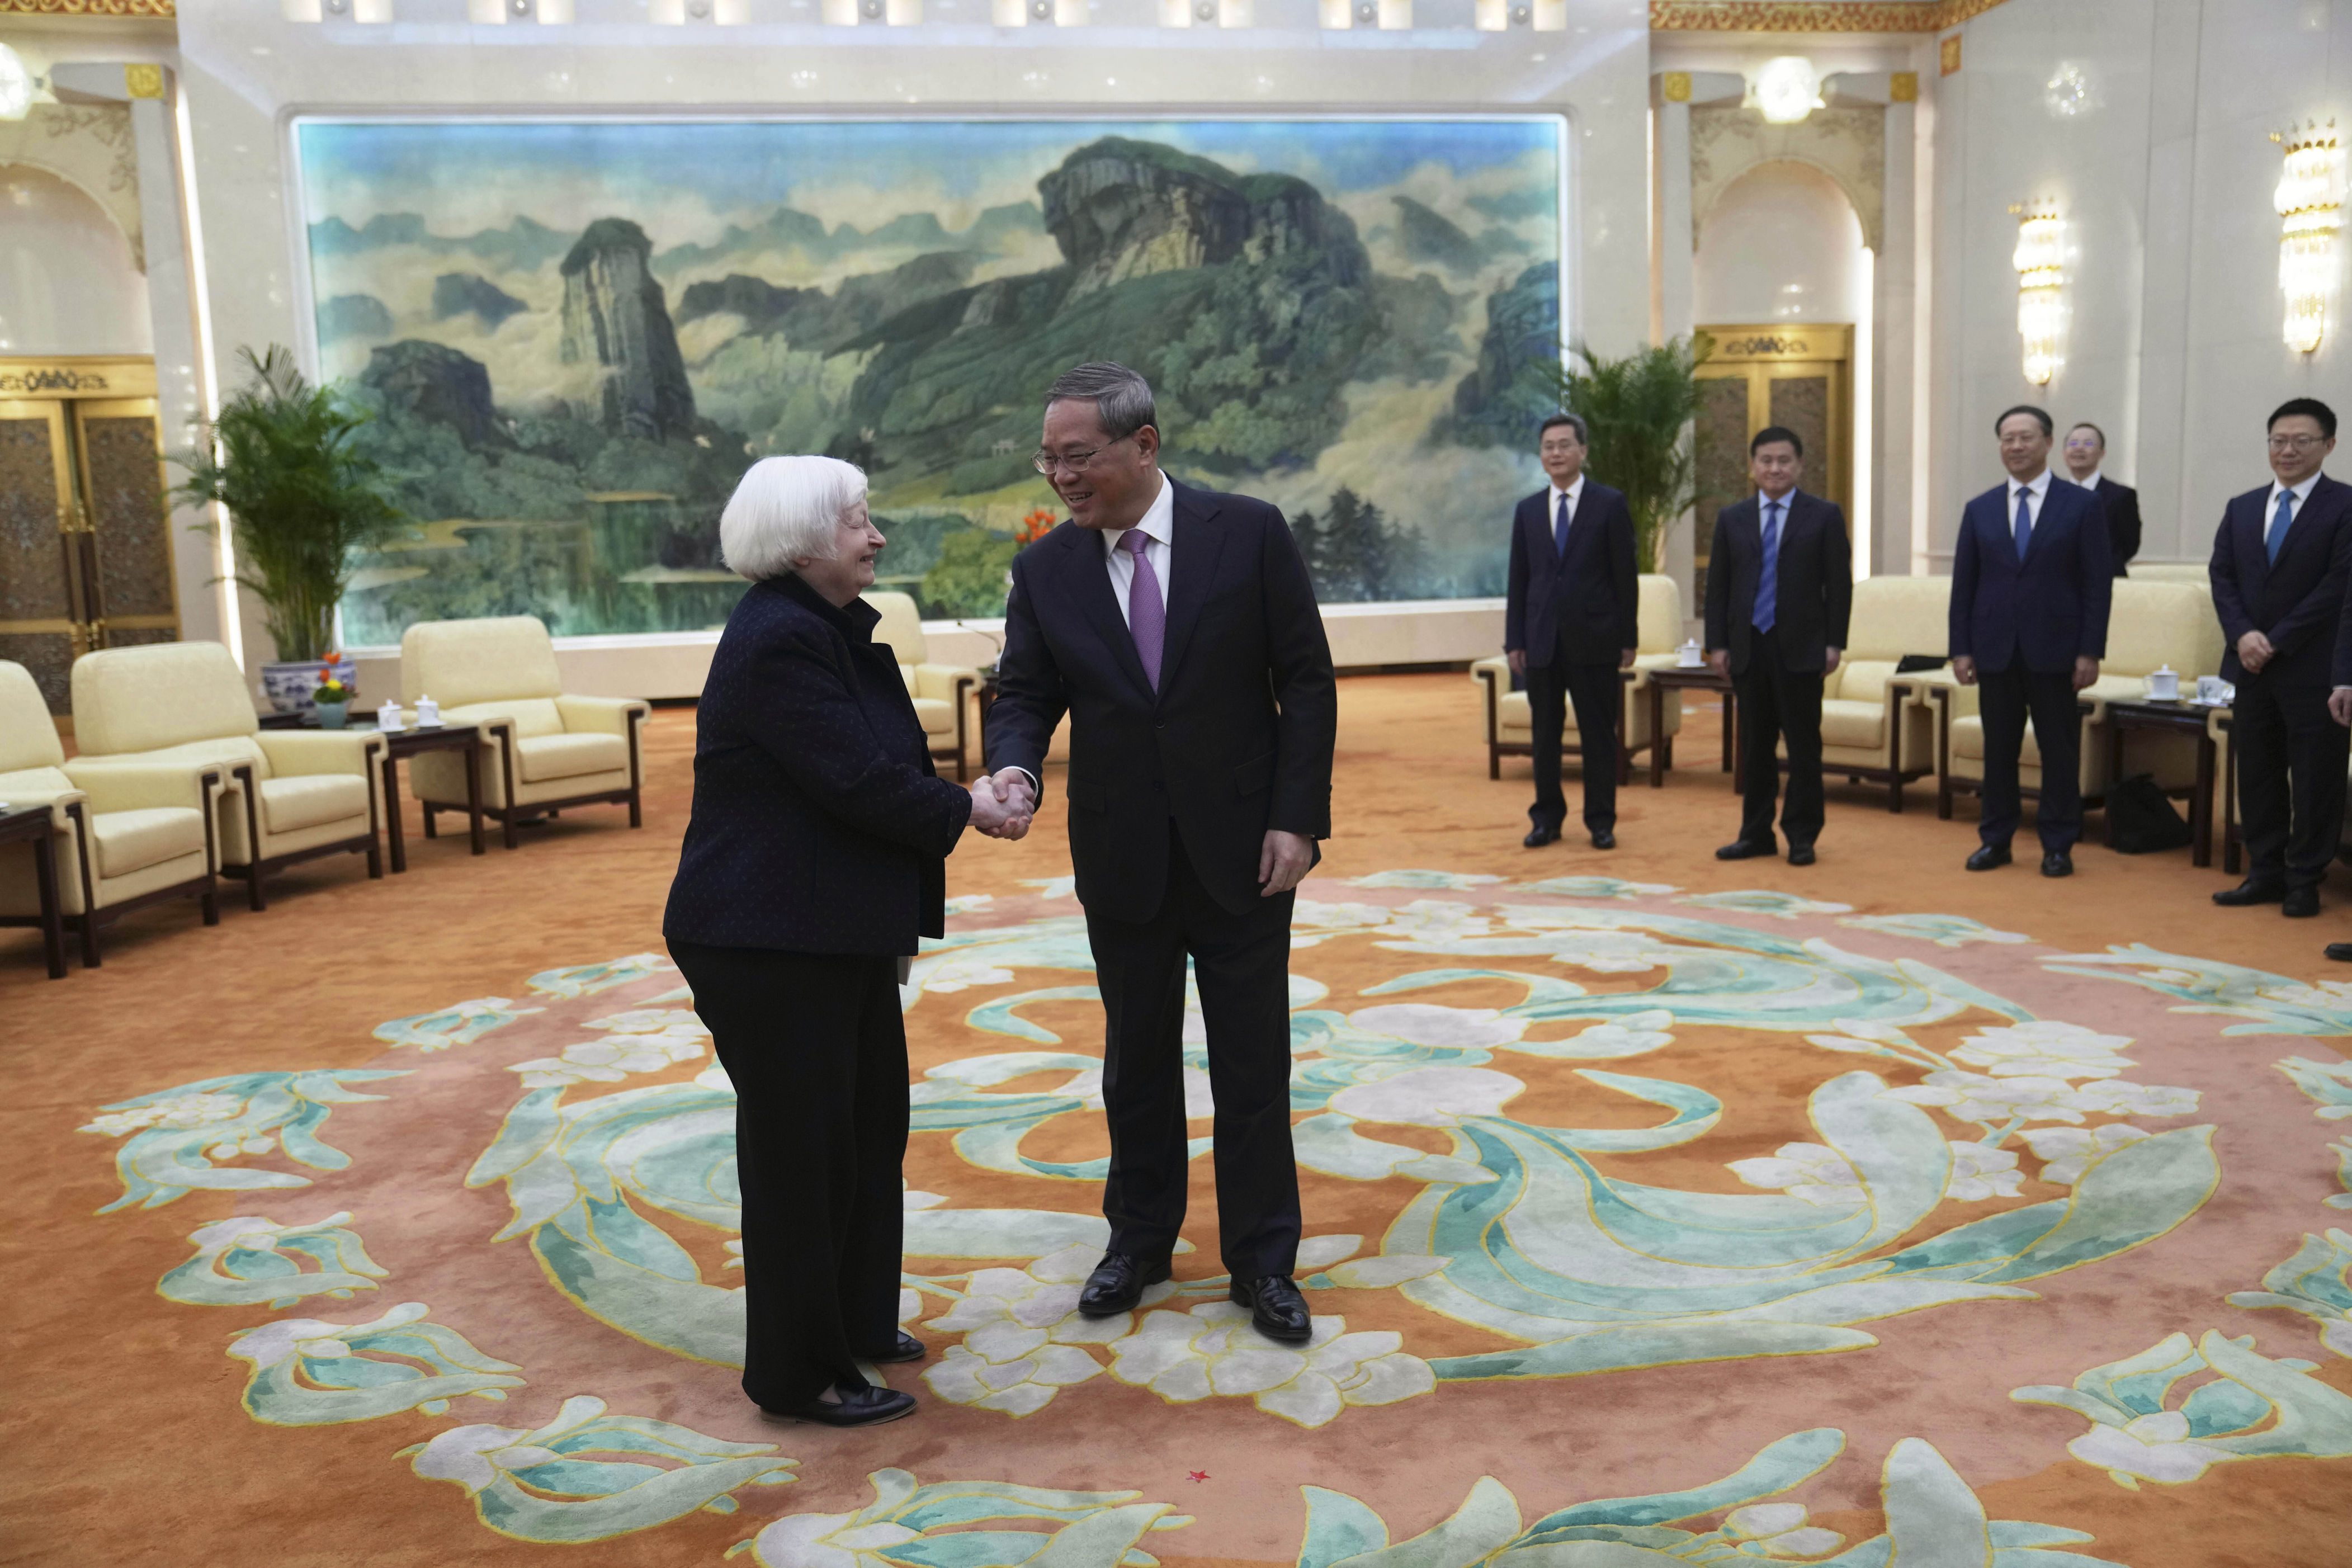 kinas statsminister om usa: vi må respektere hverandre